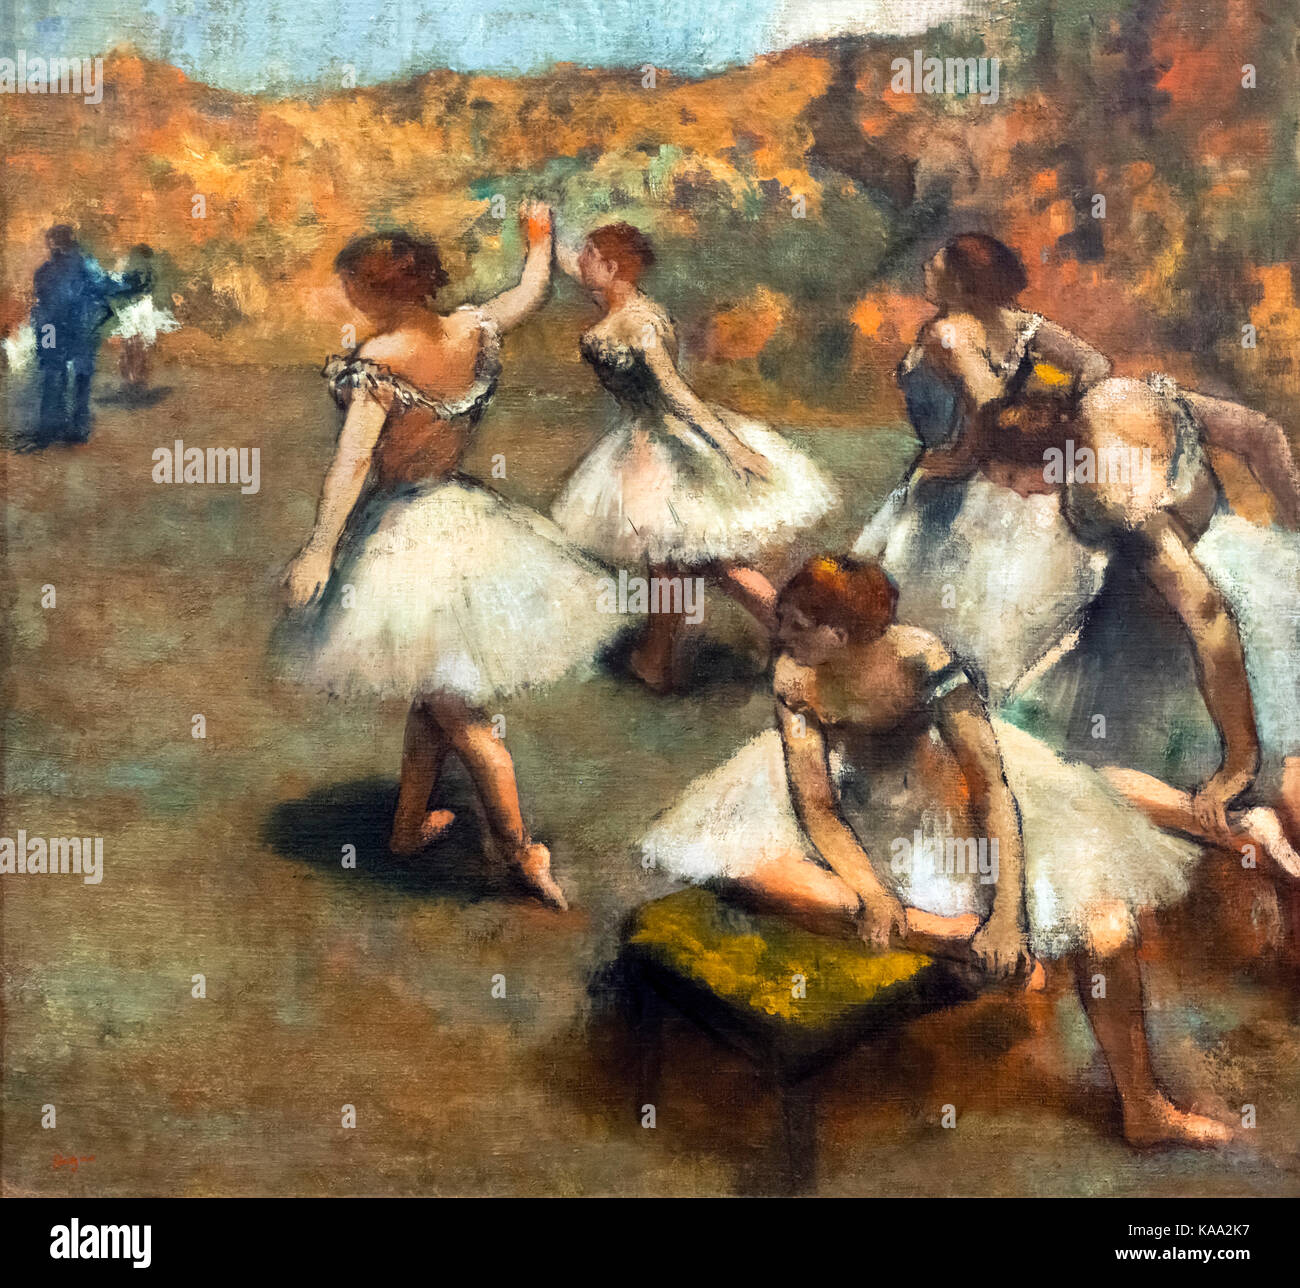 Degas. Danseuses sur la scène (danseurs sur scène) par Edgar Degas, huile sur toile, c.1889 Banque D'Images